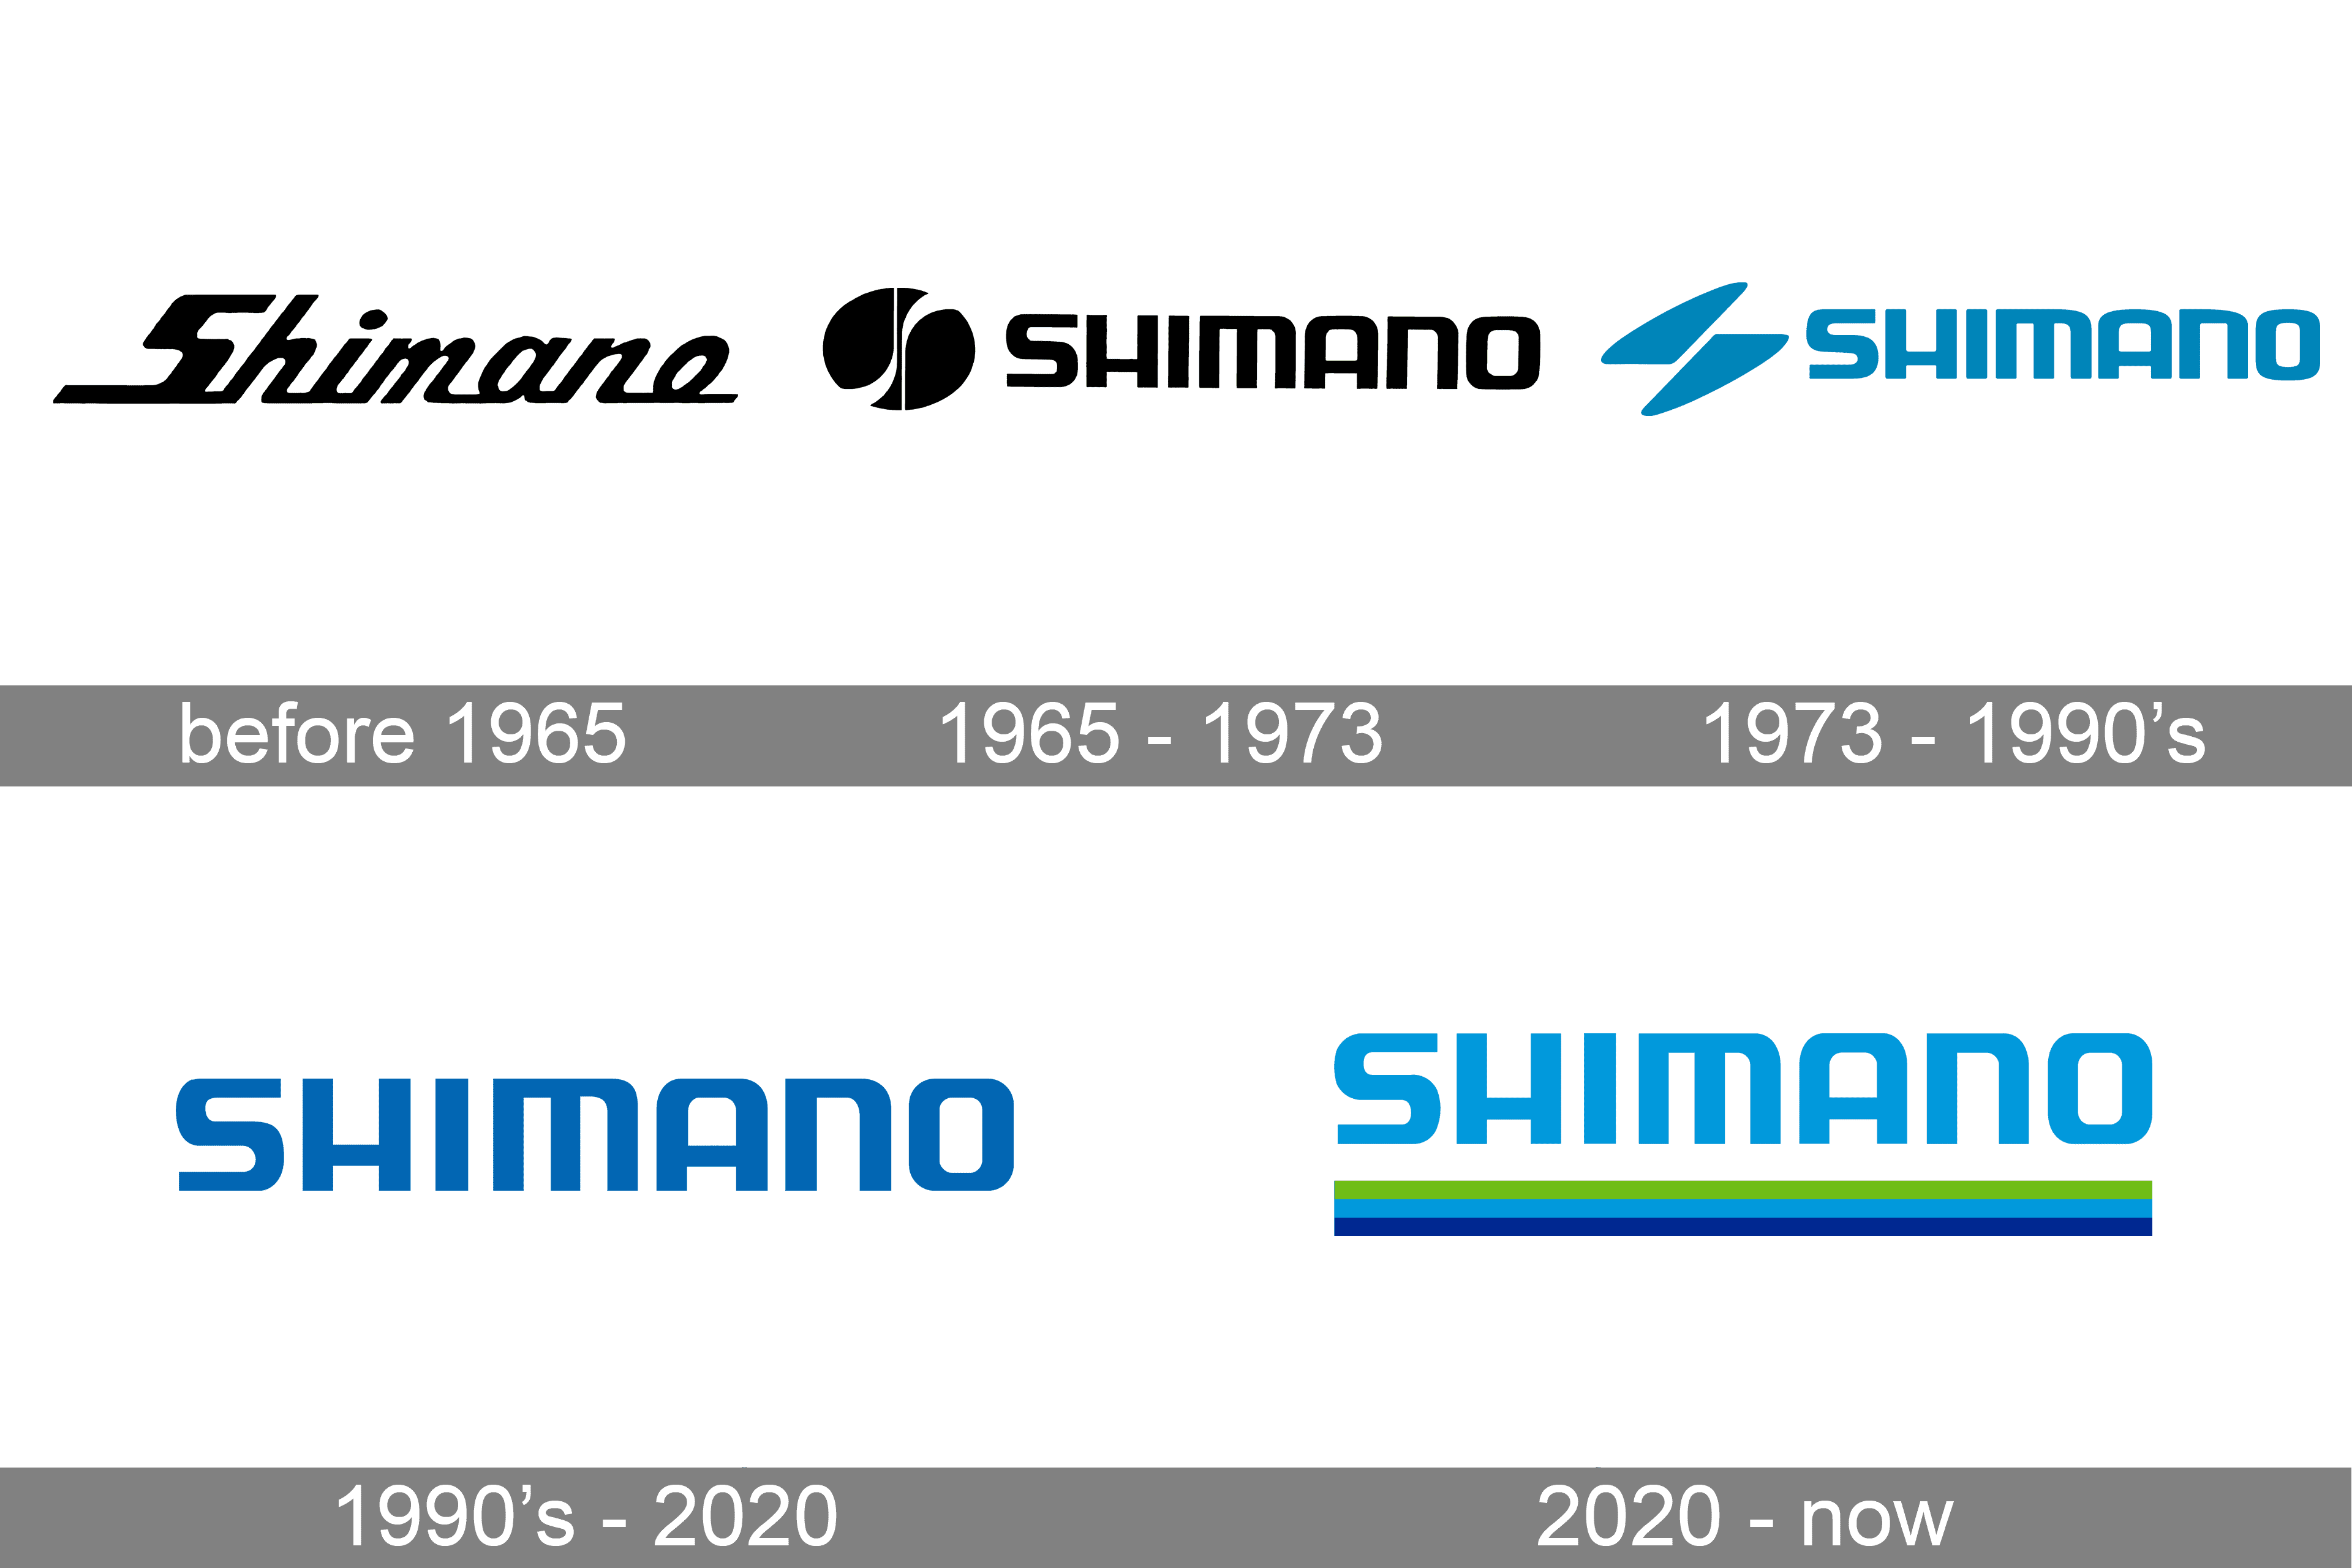 shimano logo png